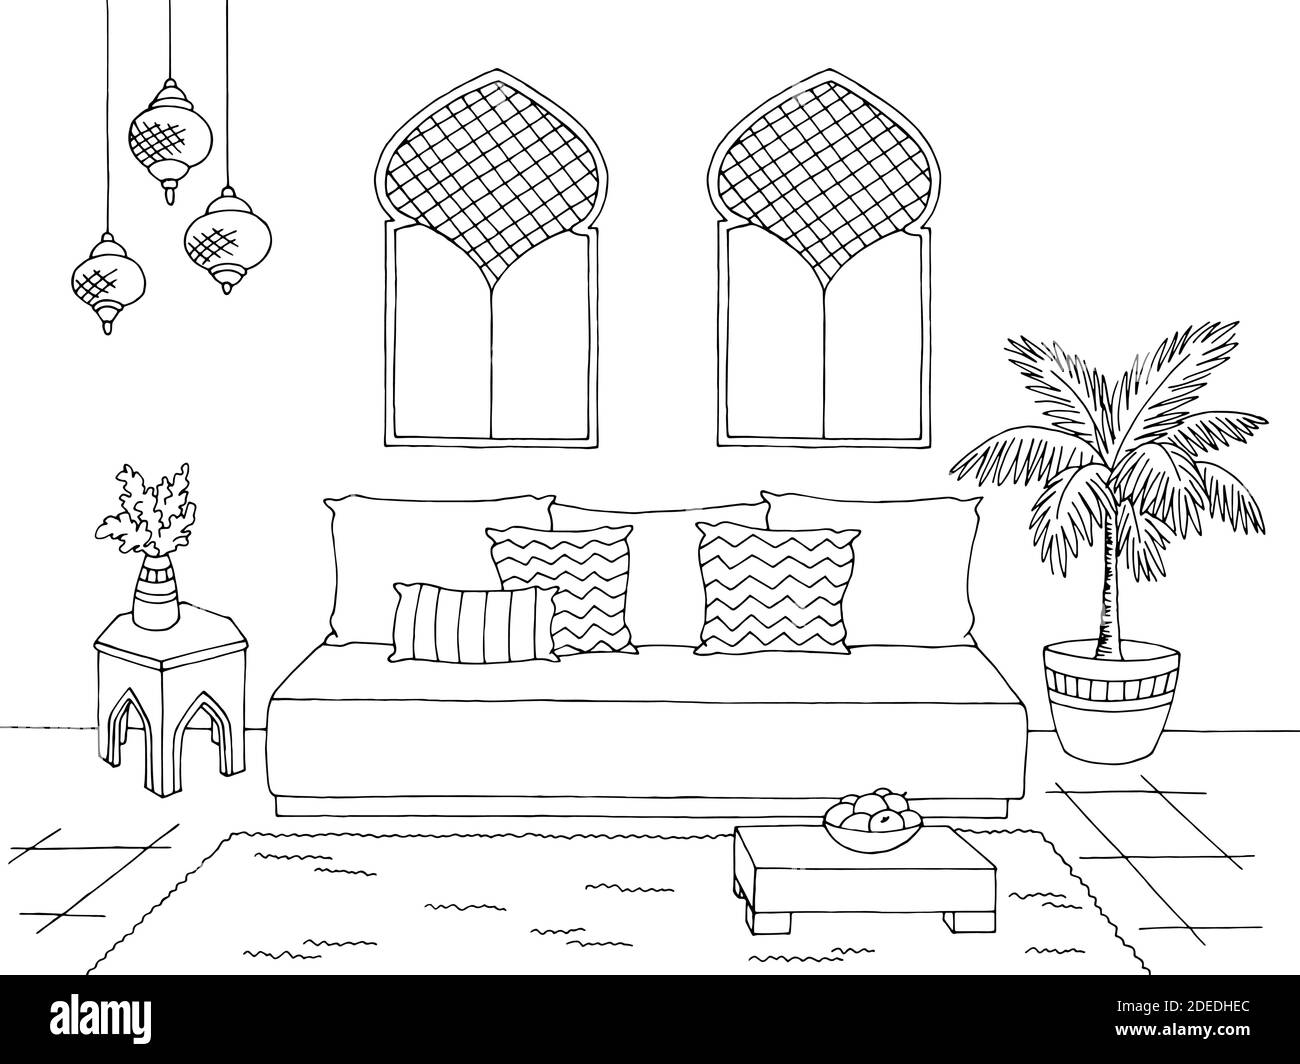 Wohnzimmer Grafik schwarz weiß arabisch Heim Interieur Skizze Illustration vektor Stock Vektor